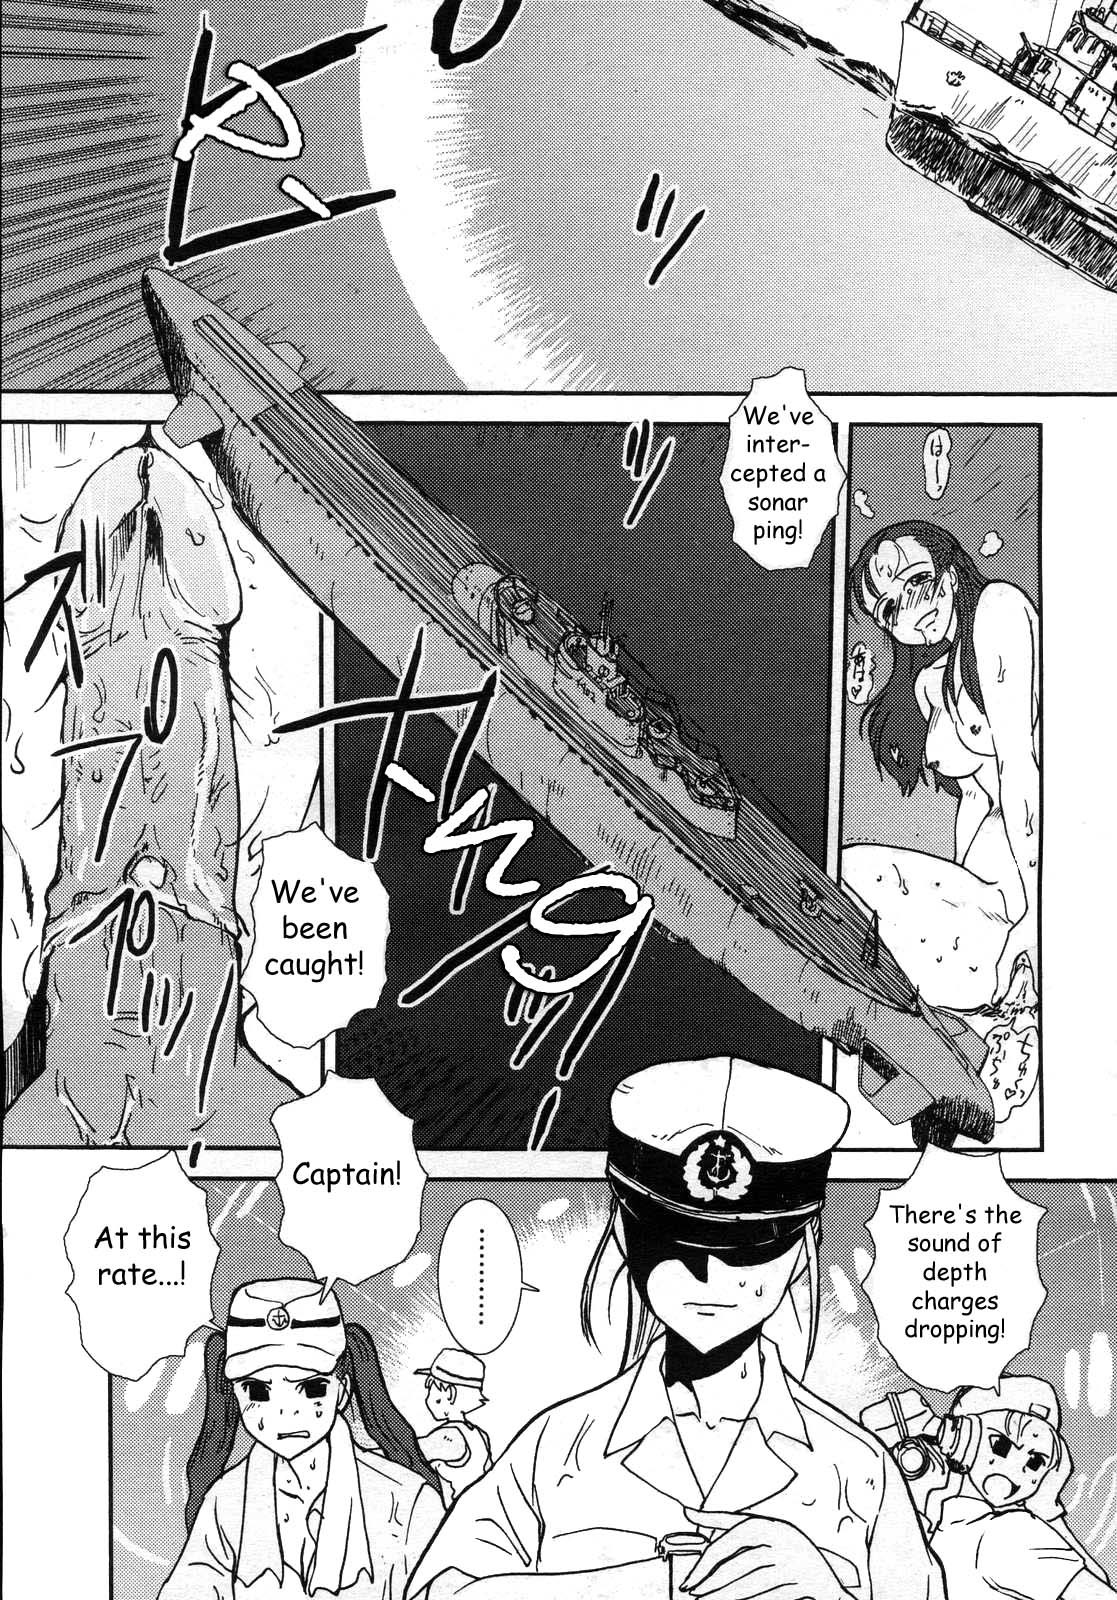 Mitsumei a.k.a. I-404 10 hentai manga